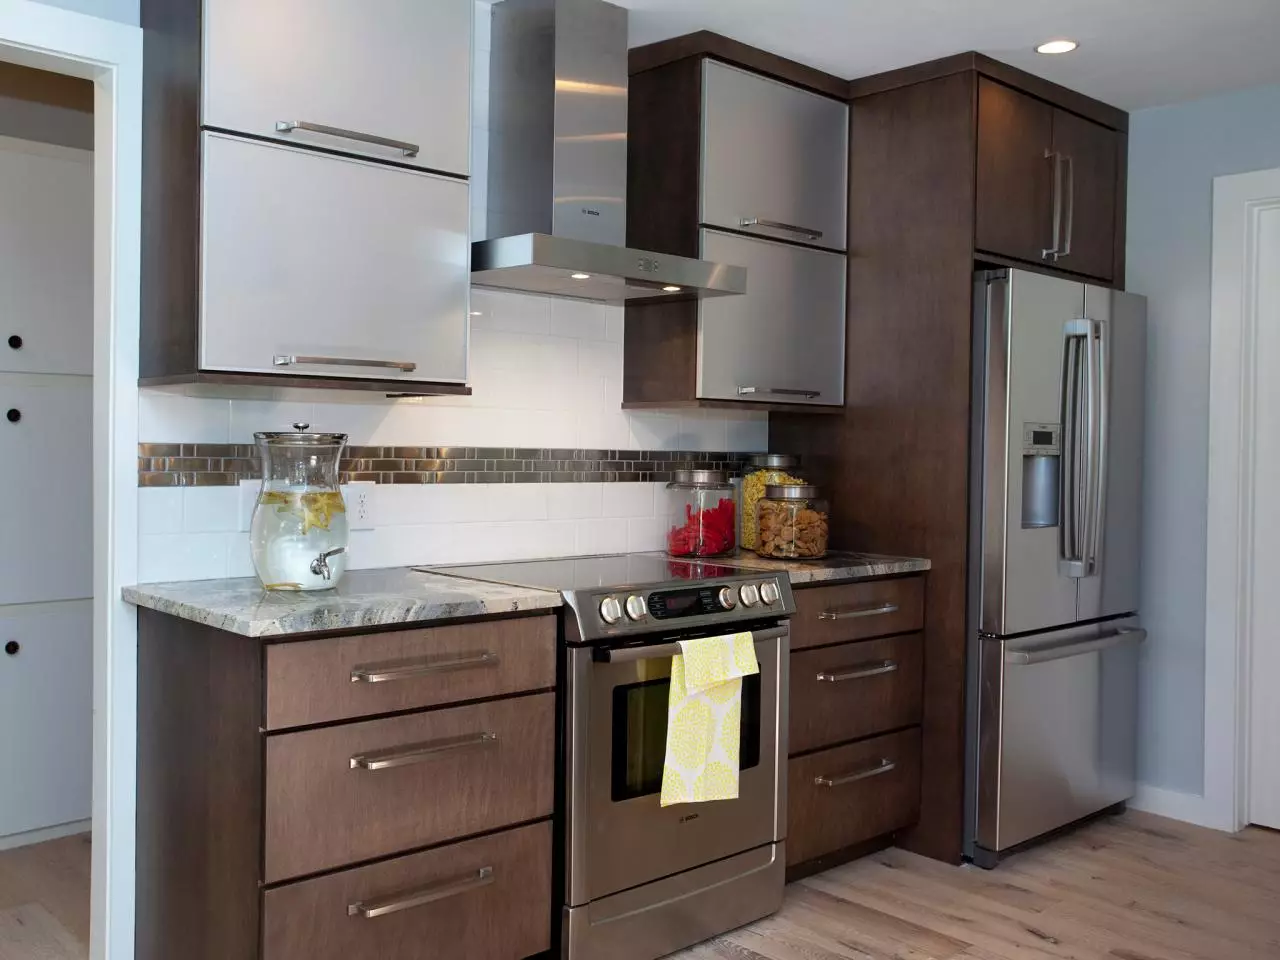 Desain dapur kecil dengan lemari es (76 foto): Di mana harus meletakkan kulkas? Pojok dan headset dapur built-in dengan kulkas di interior. Bagaimana cara menempatkannya di kamar dengan jendela? 9504_13